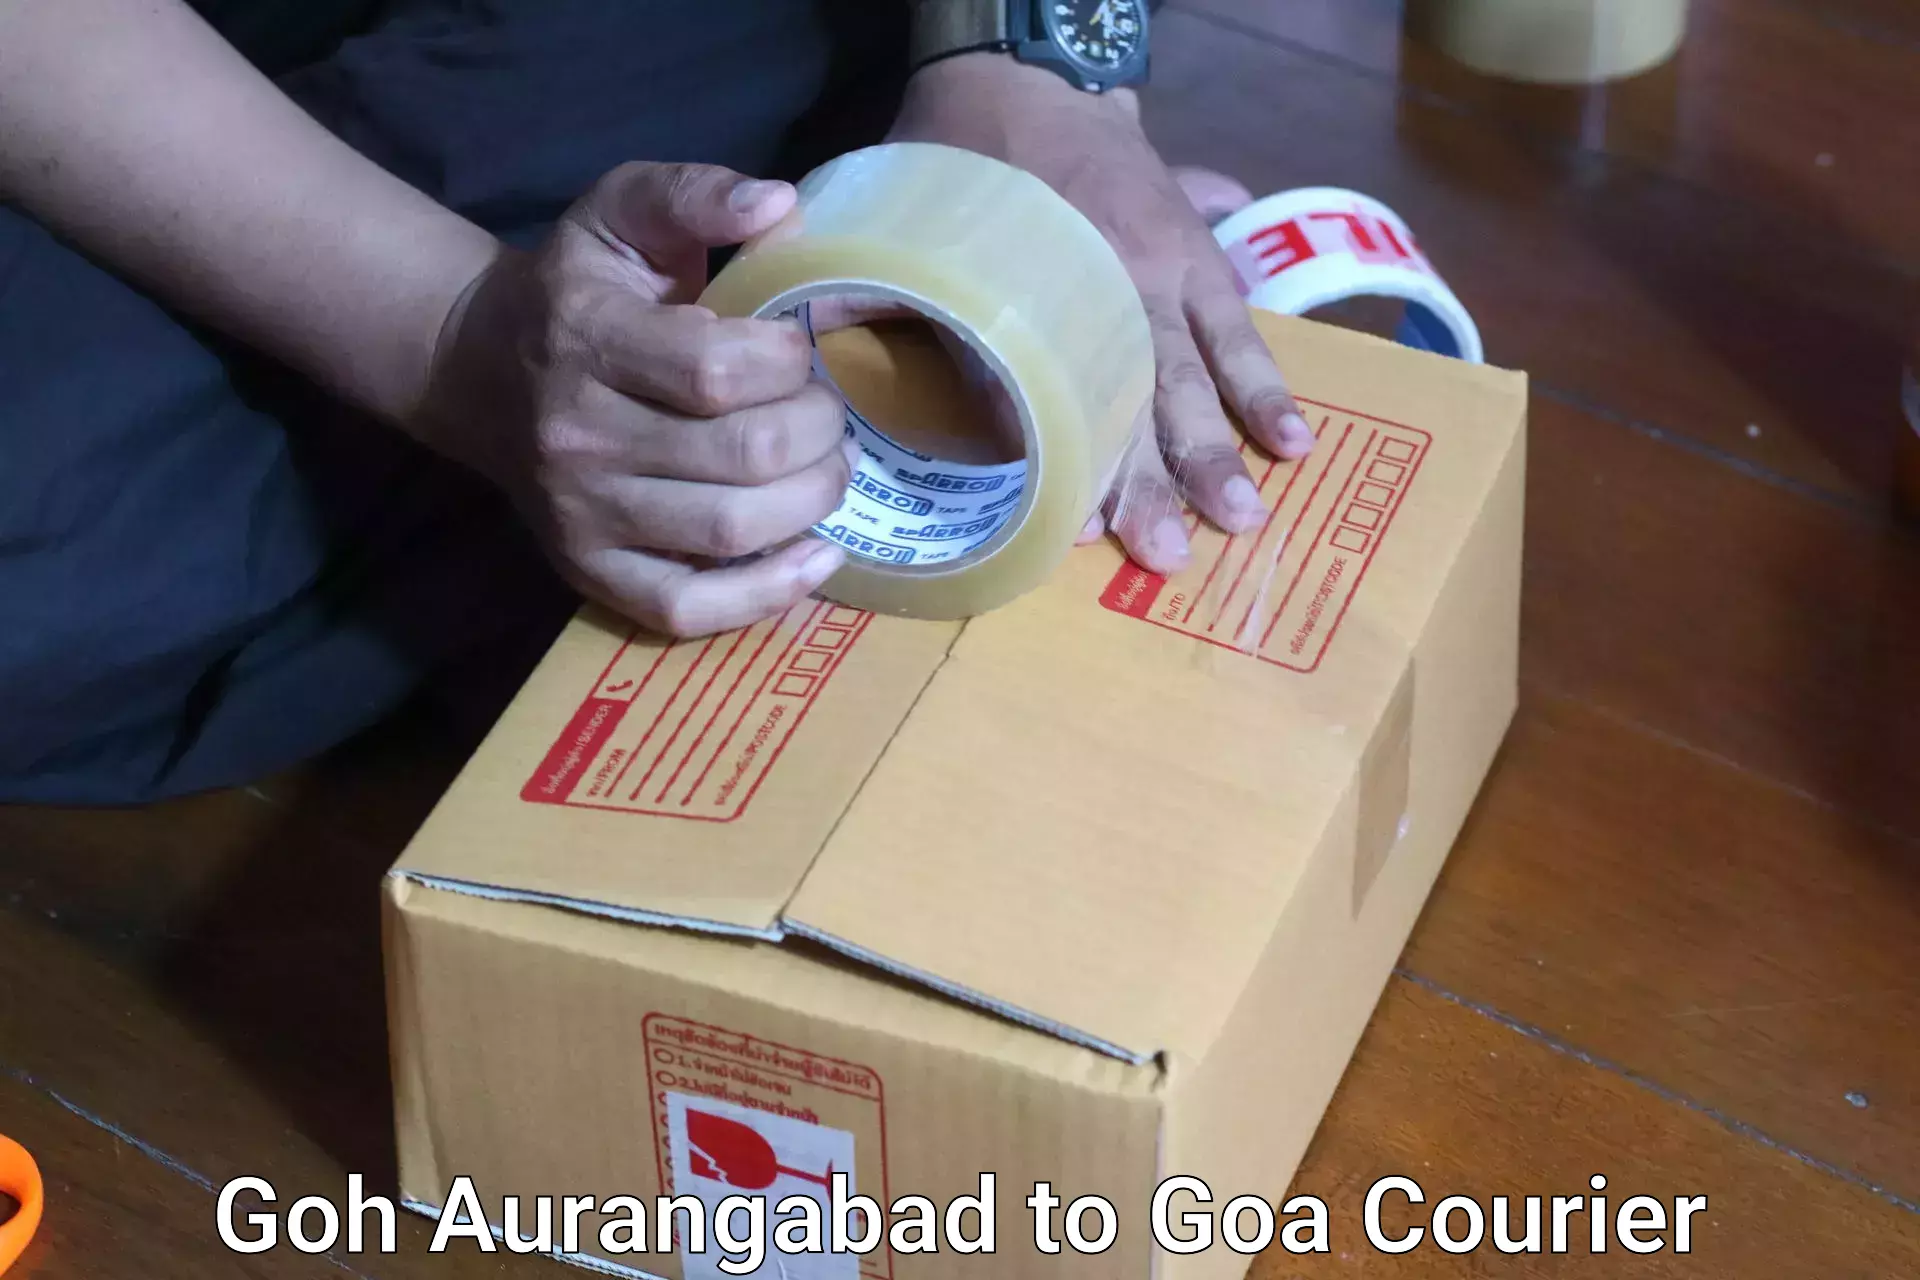 Single item baggage courier Goh Aurangabad to Goa